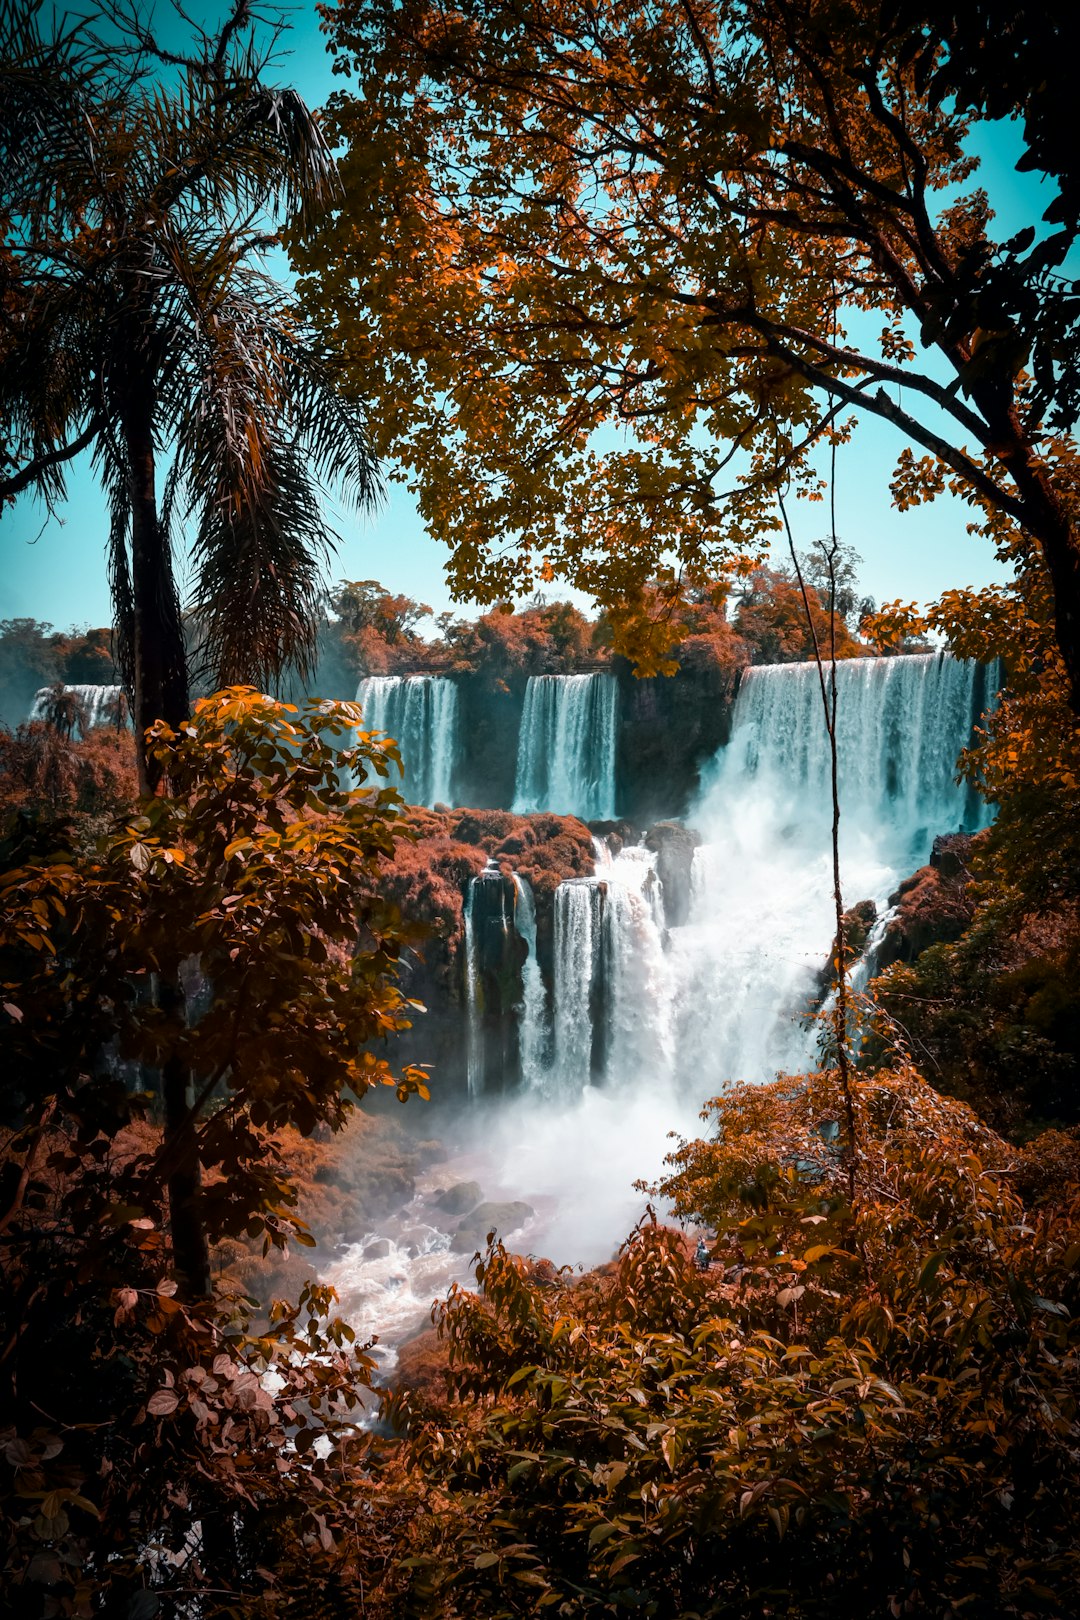 Iguazu Falls Travel Guide